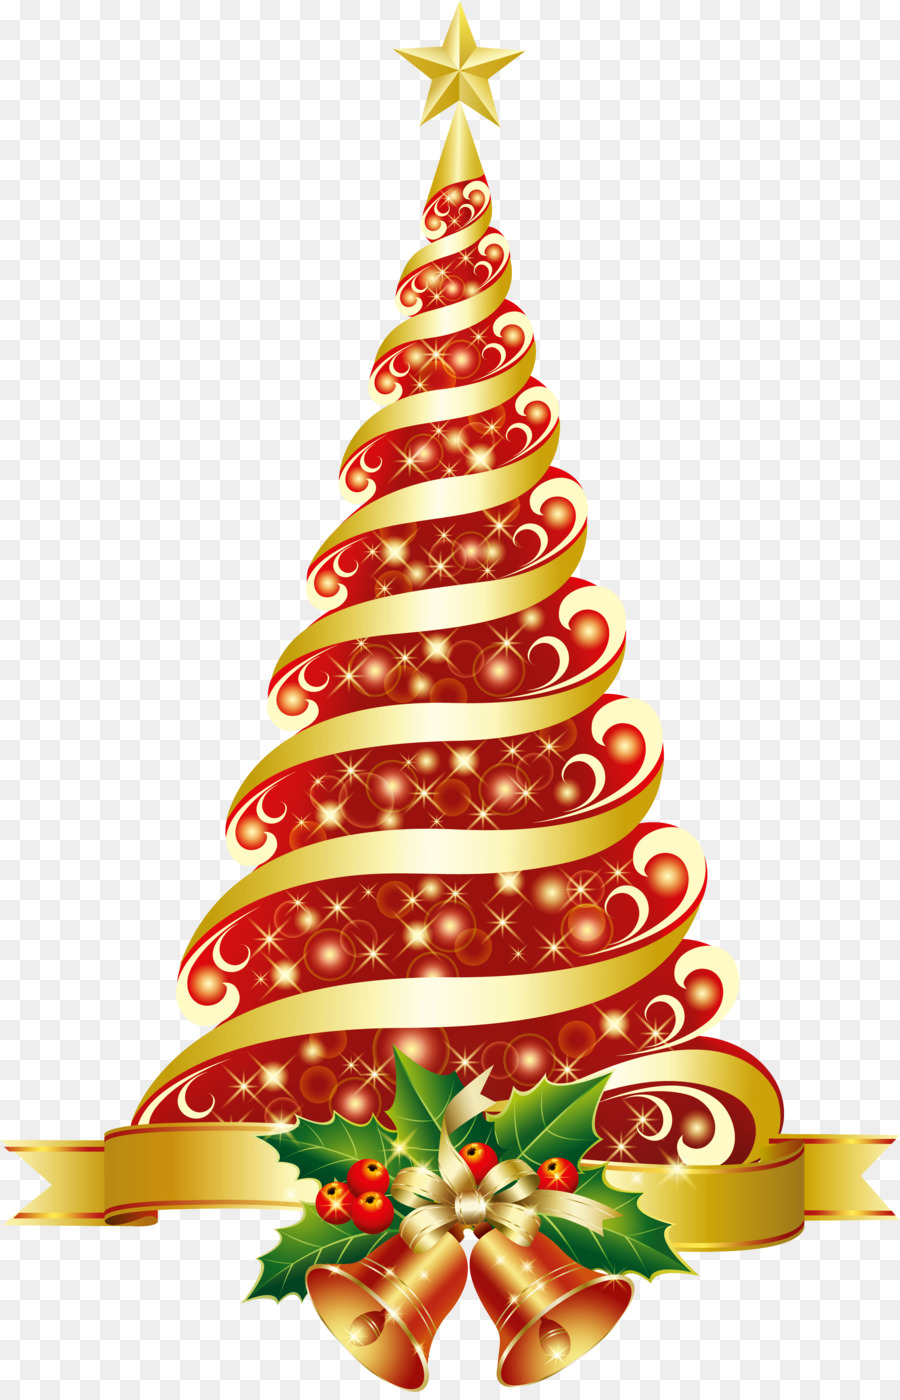 Albero di natale, cartolina di Natale Clip art - albero di natale